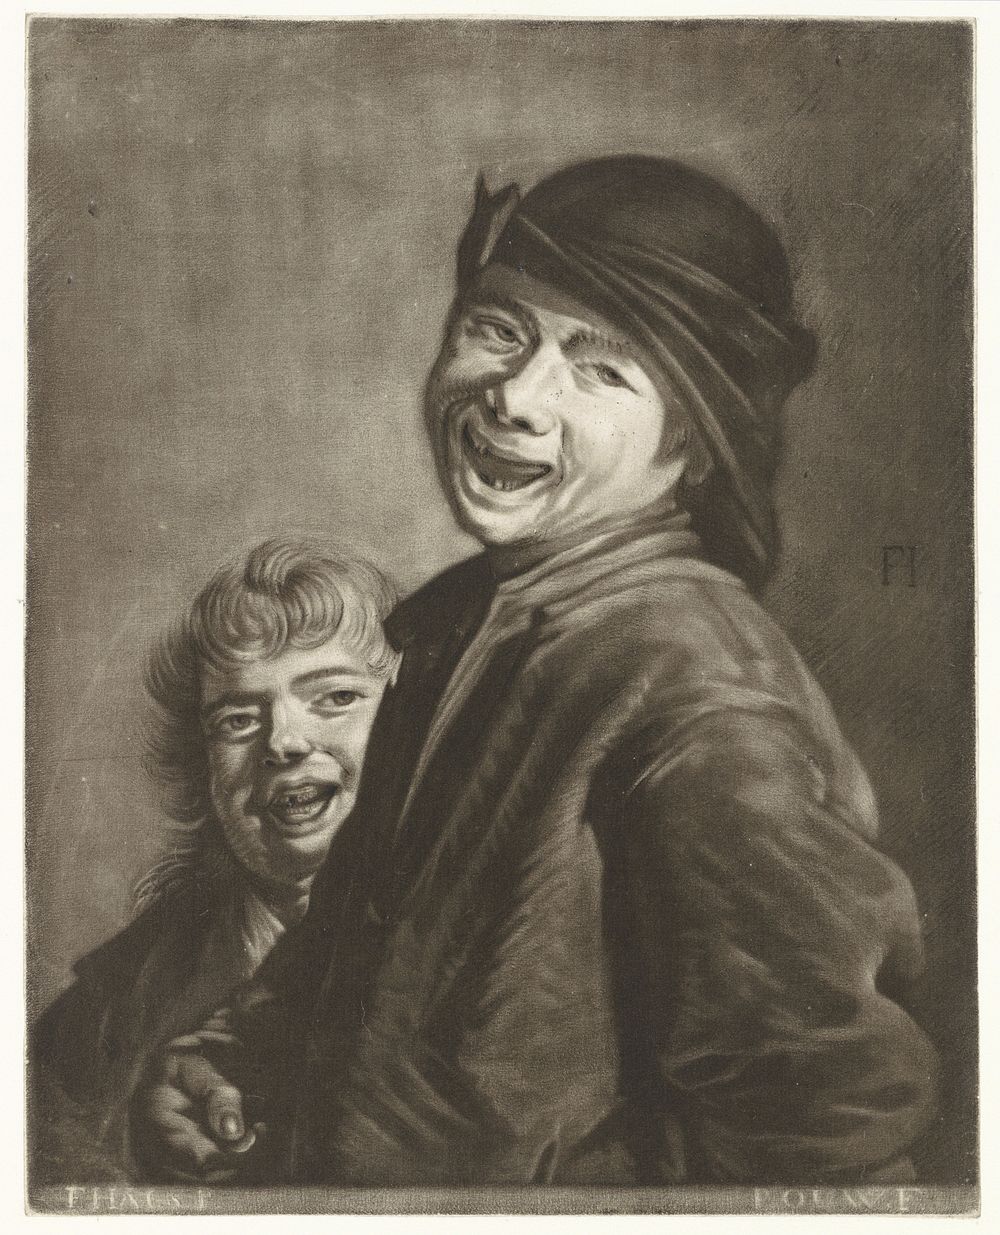 Twee lachende jongens (1743 - 1800) by Pieter Louw and Frans Hals